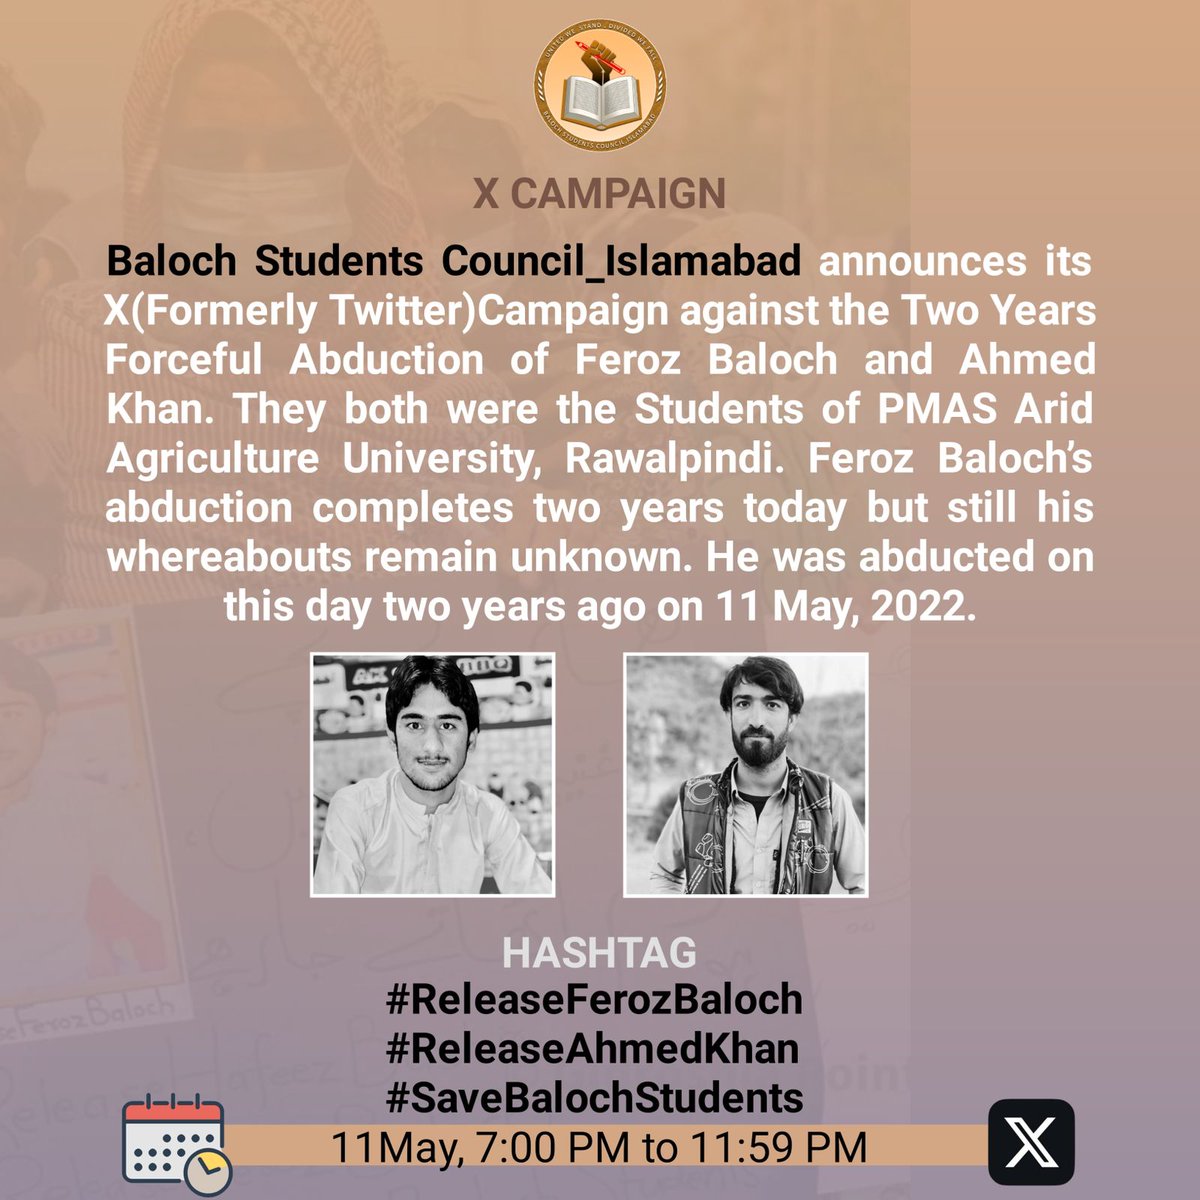 #ReleaseFerozBaloch

#ReleaseAhmedKhan

#SaveBalochStudents